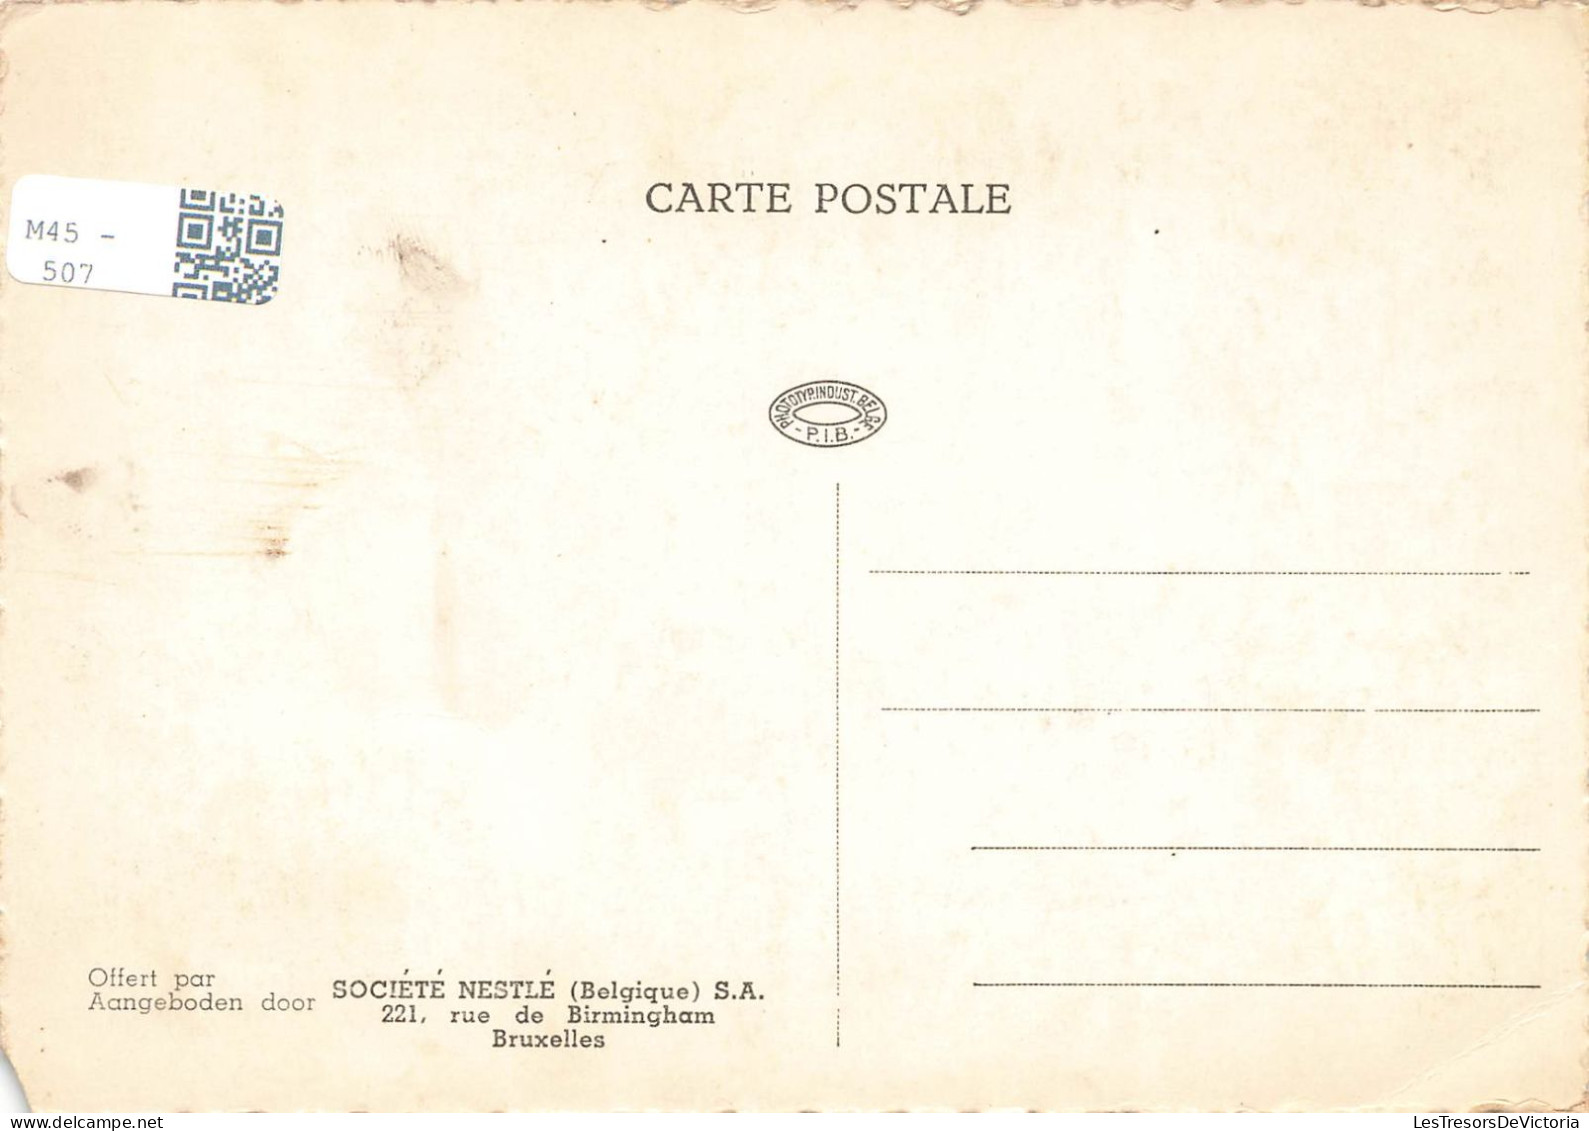 PUBLICITE - Nestlé - Marionnettes - Chocolat - Carte Postale Ancienne - Werbepostkarten